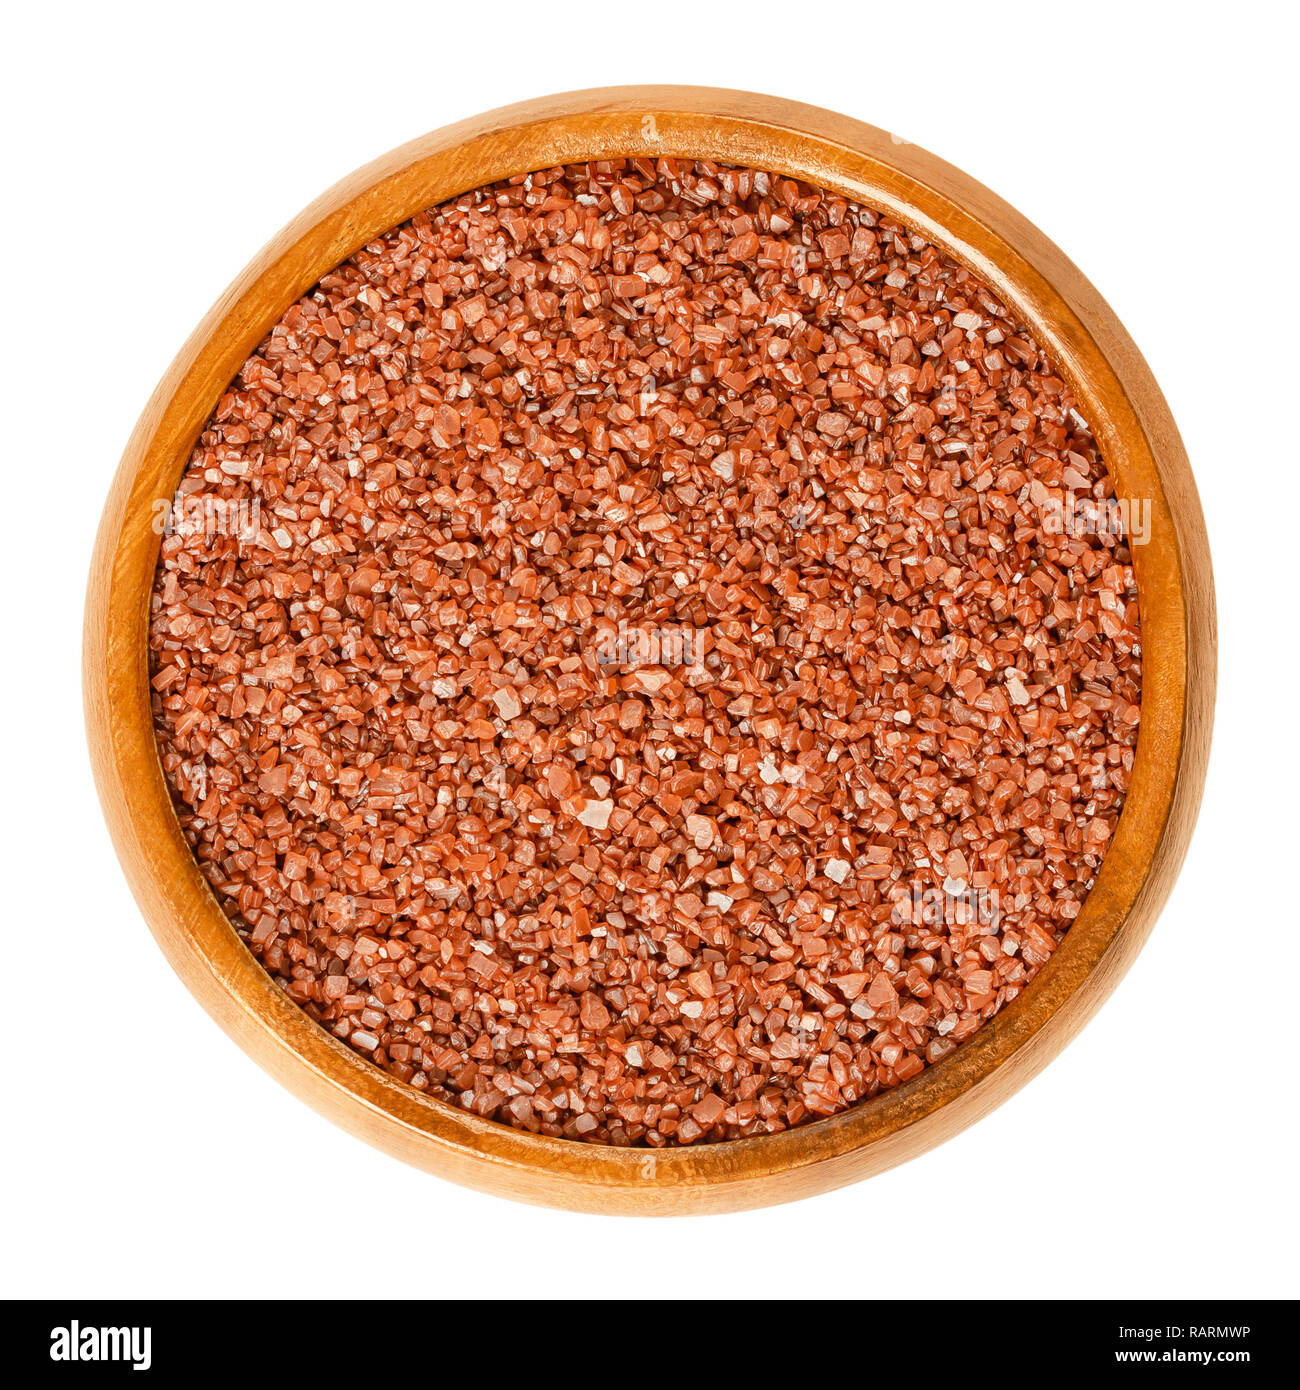 Hawaiian sal del mar rojo en el tazón de madera. Alaea sal, cereales no refinados, ricos en óxido de hierro mezclado con barro volcánico. Característico color rojo ladrillo. Foto de stock